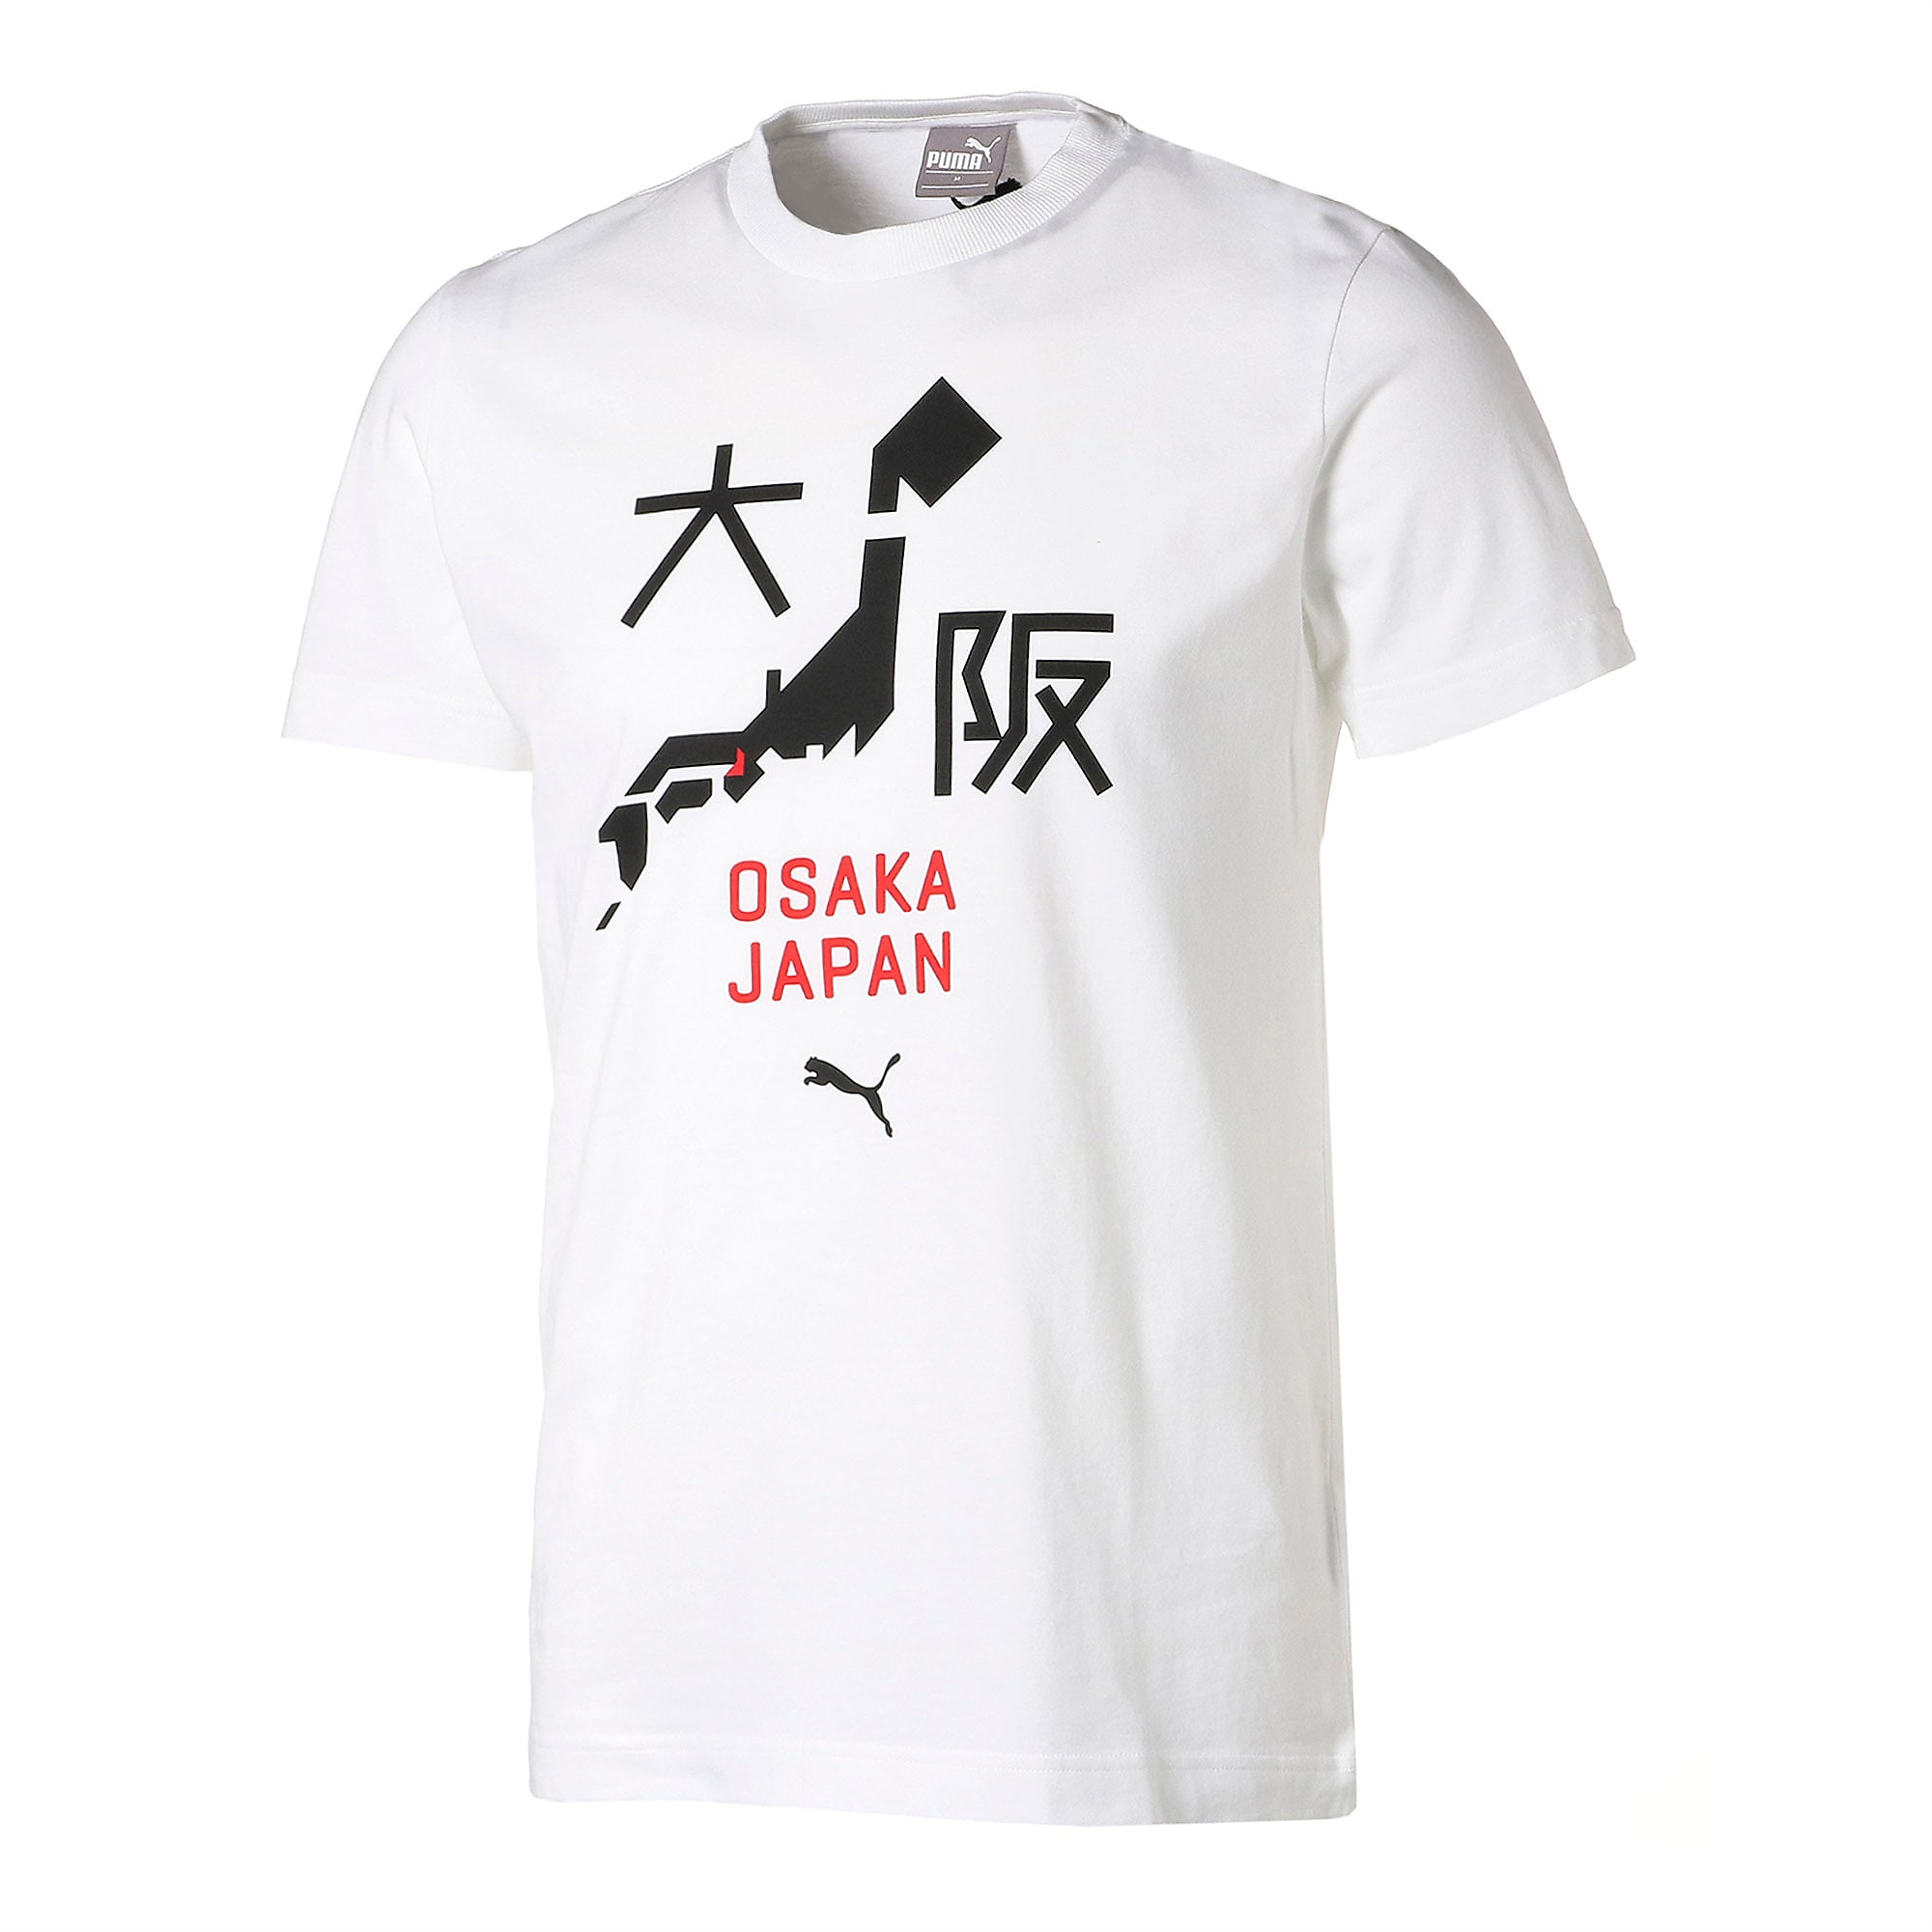 Puma公式 シティー ユニセックス 半袖 Tシャツ 2 Osaka 大阪 Puma White プーマ Tシャツ プーマ